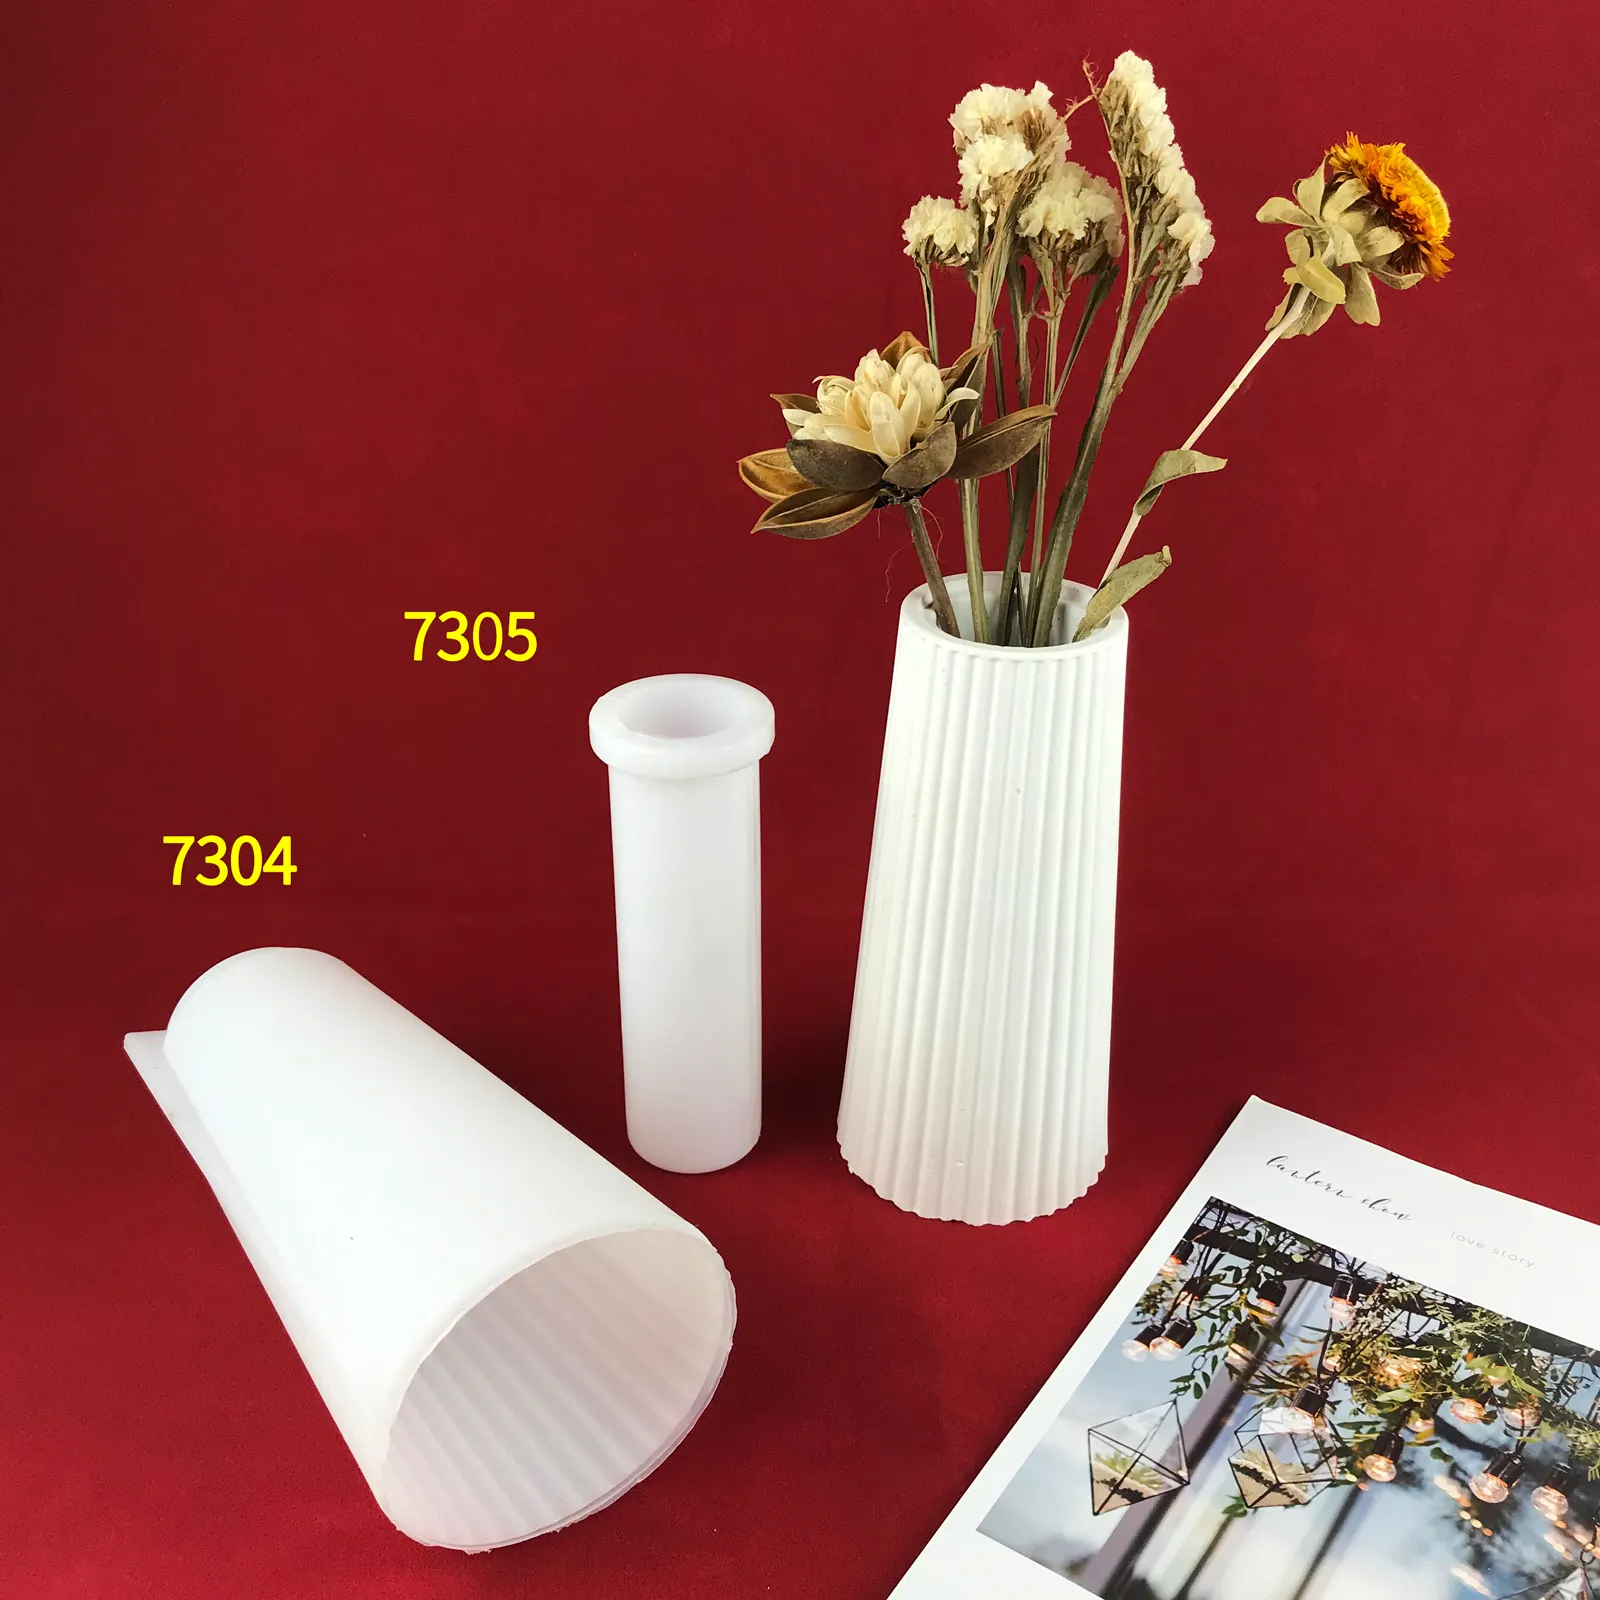 7304 7305 очень большая ваза для цветов 7,5 дюйма утолщенная ваза круглые винтажные полосатые бутылки силиконовые формы из смолы